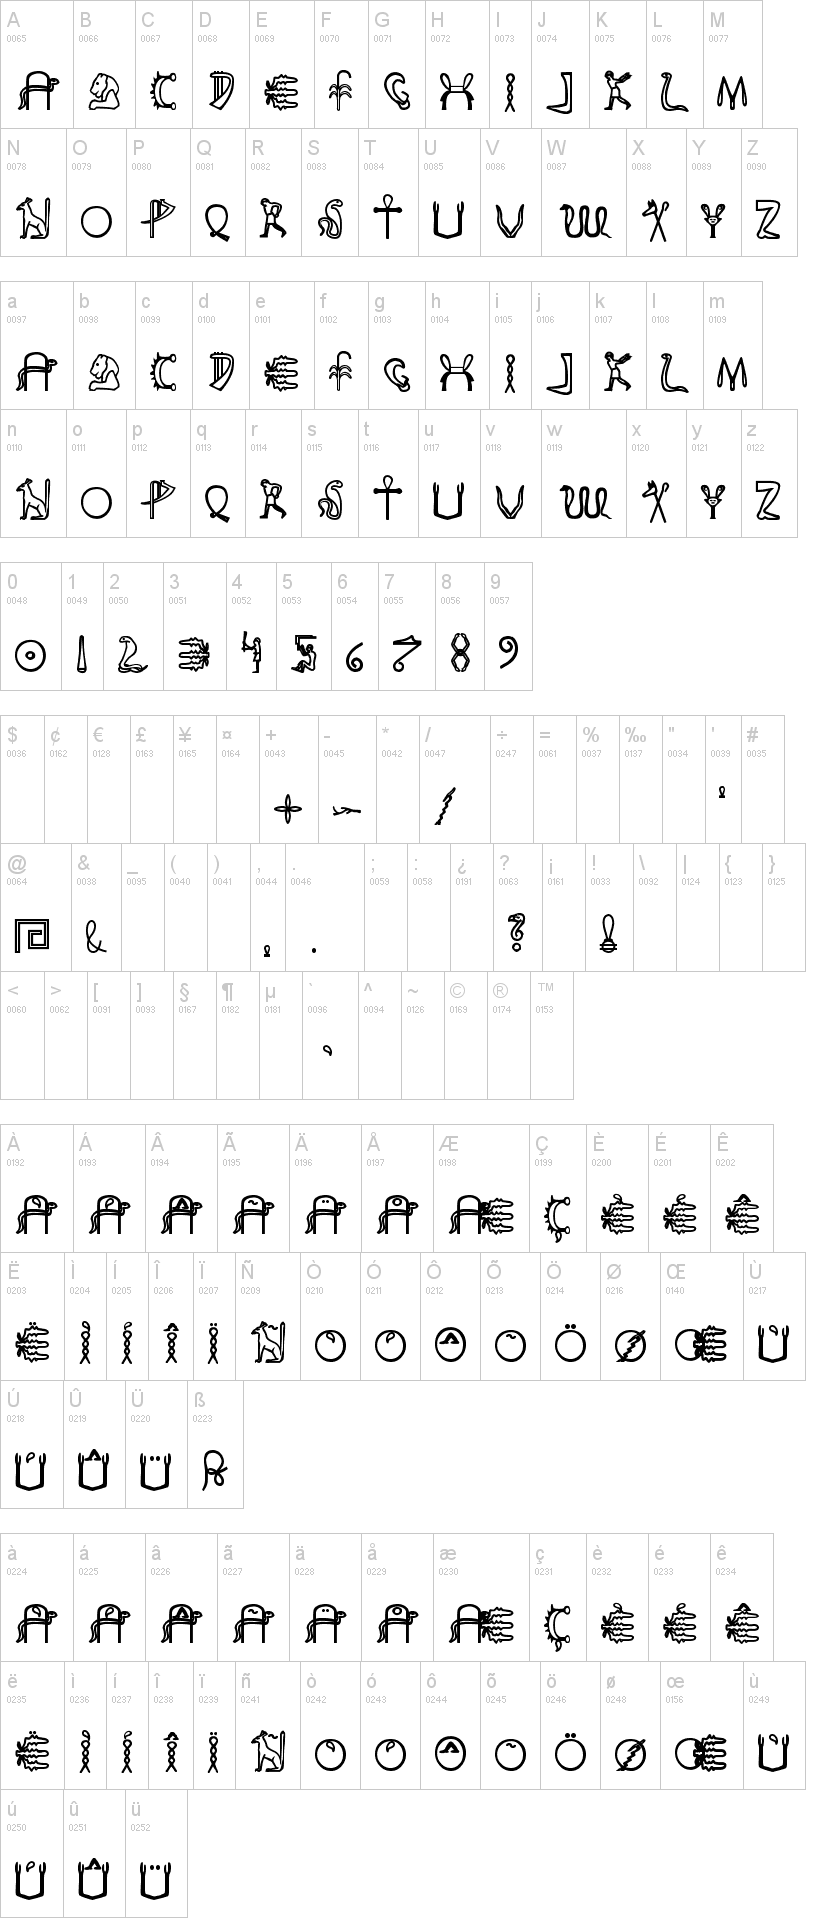 Fake Hieroglyphs